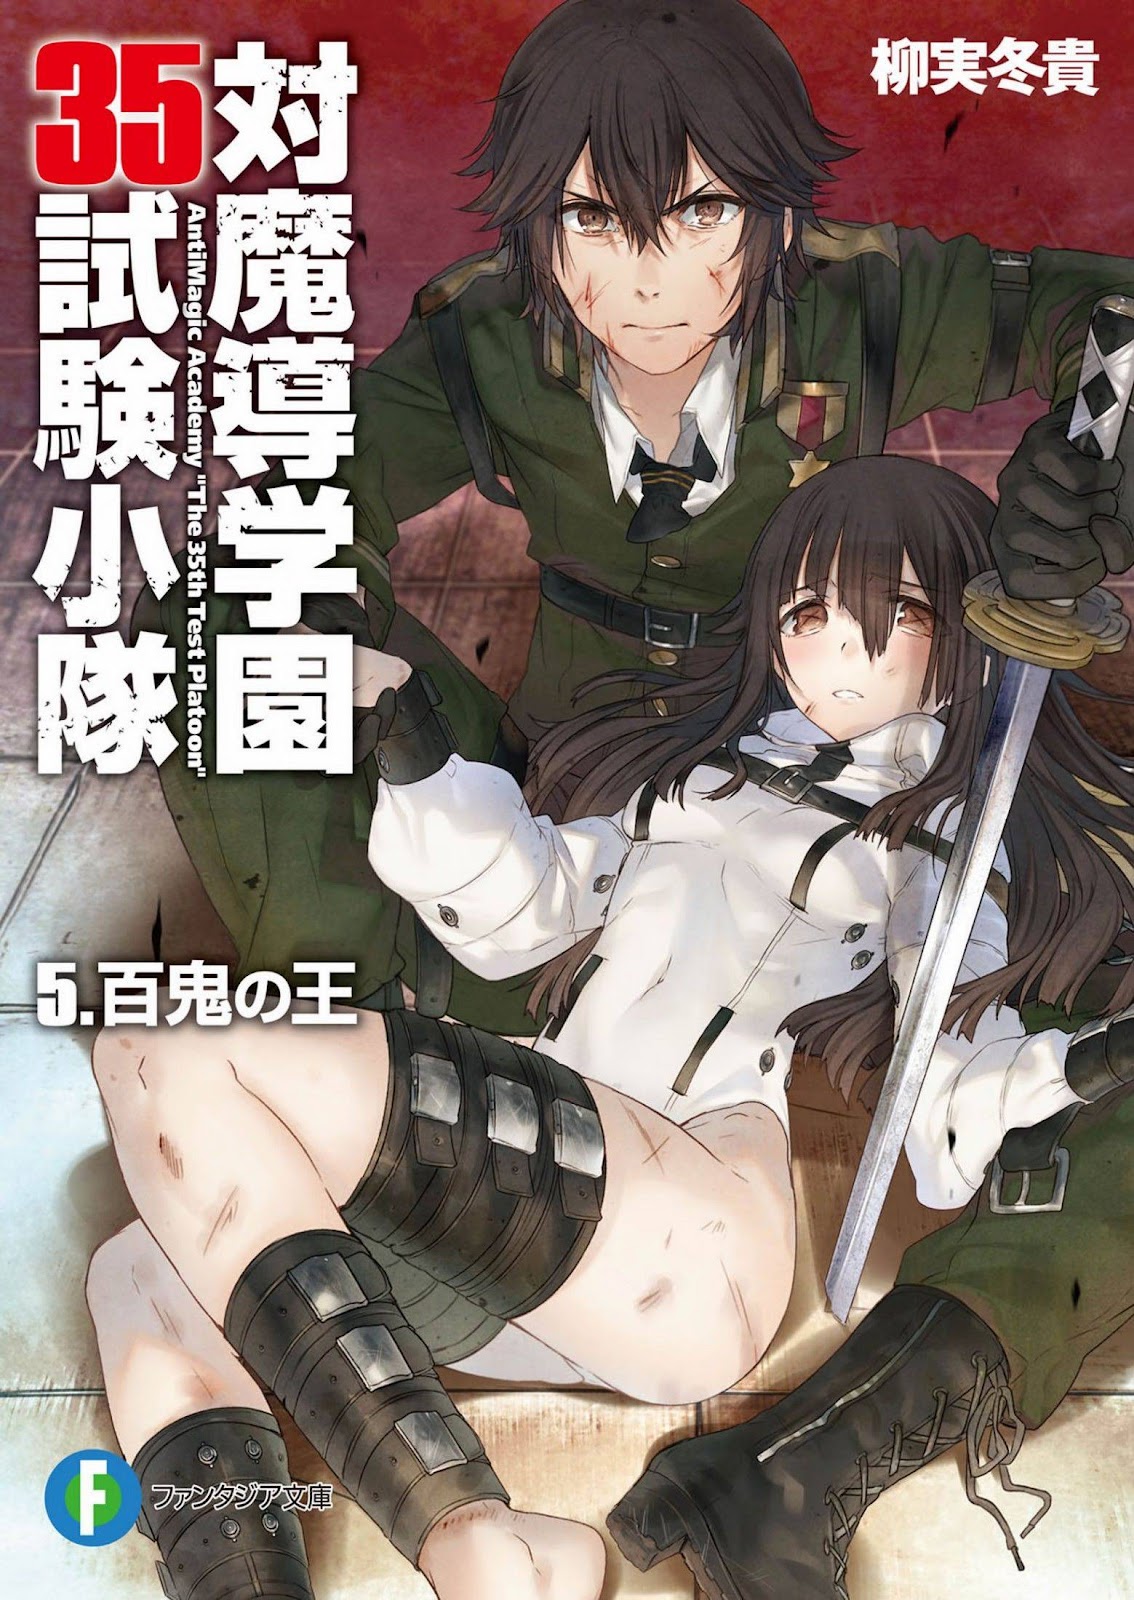 [Ruidrive] - Ilustrasi Light Novel Taimadou Gakuen 35 Shiken Shoutai - Volume 05 - 01